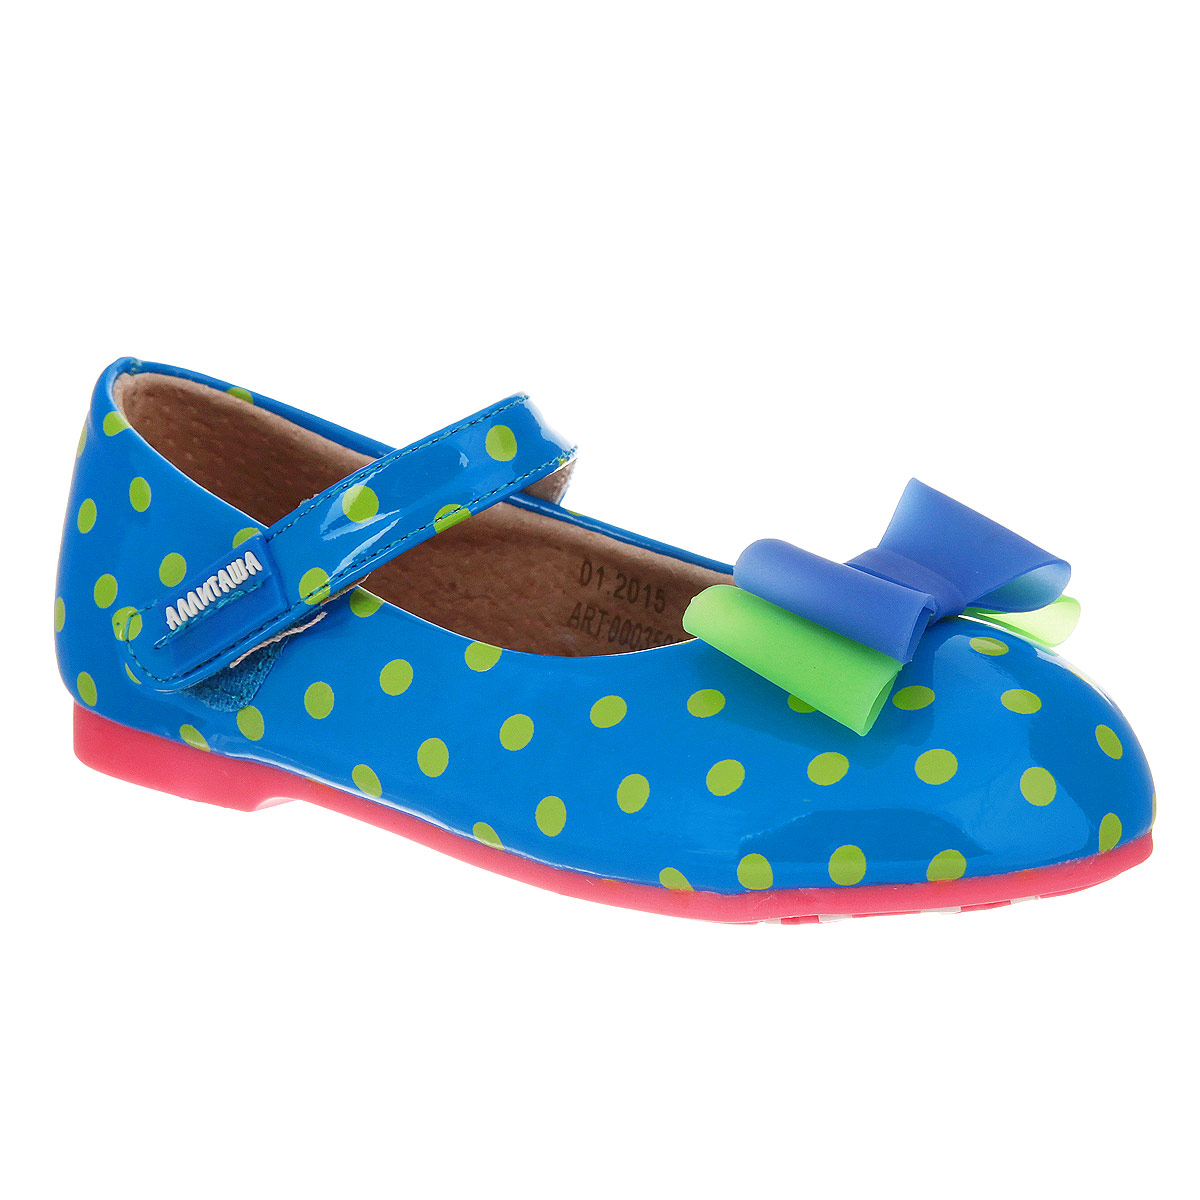 Туфли для девочки Аллигаша, цвет: синий, салатовый. 000350302. Размер 23